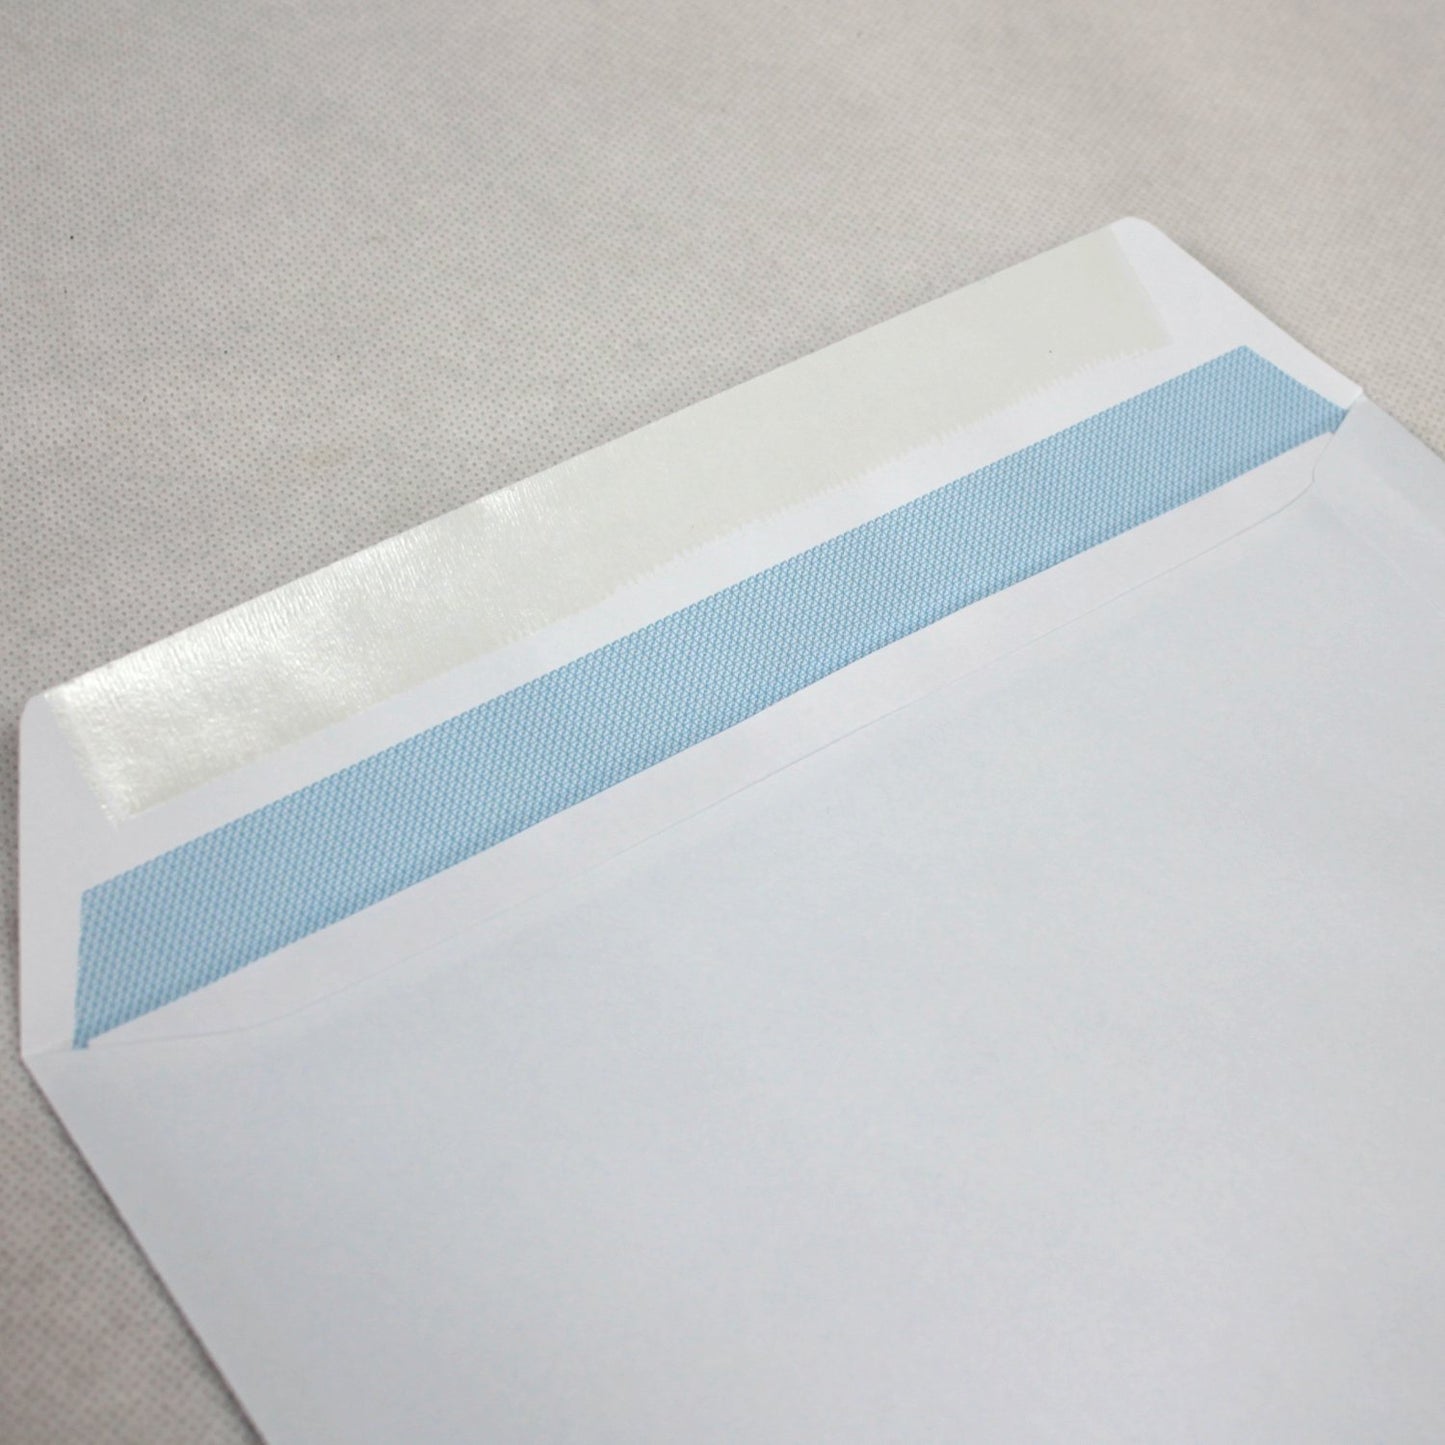 324x229mm C4 White Gummed Envelopes (Window 40x105mm)